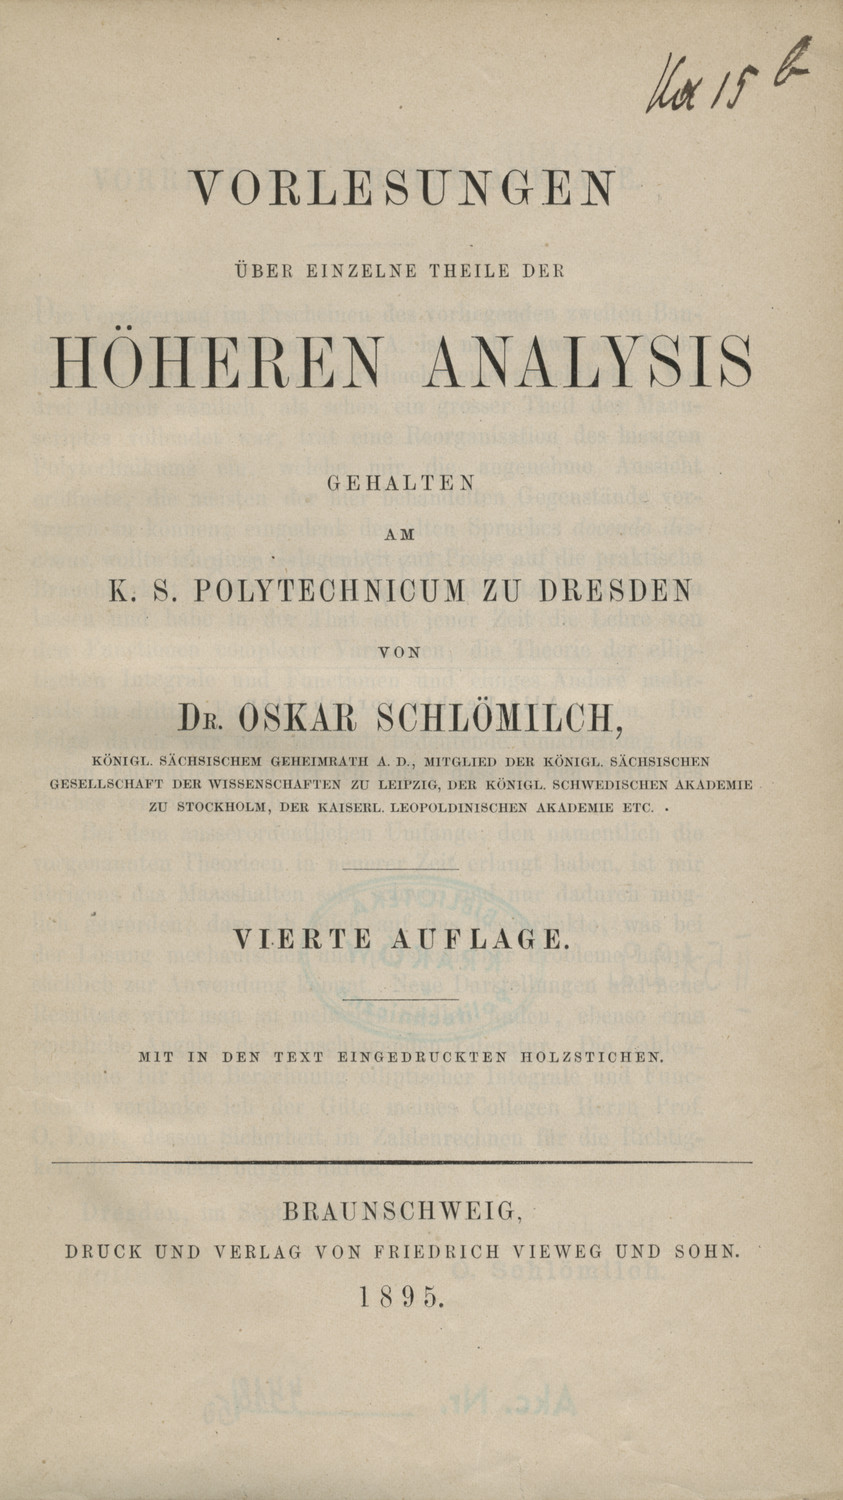 Compendium der höheren Analysis : in zwei Bänden. Bd. 2, Vorlesungen über einzelne Theile der höheren Analysis gehalten am K. S. Polytechnicum zu Dresden